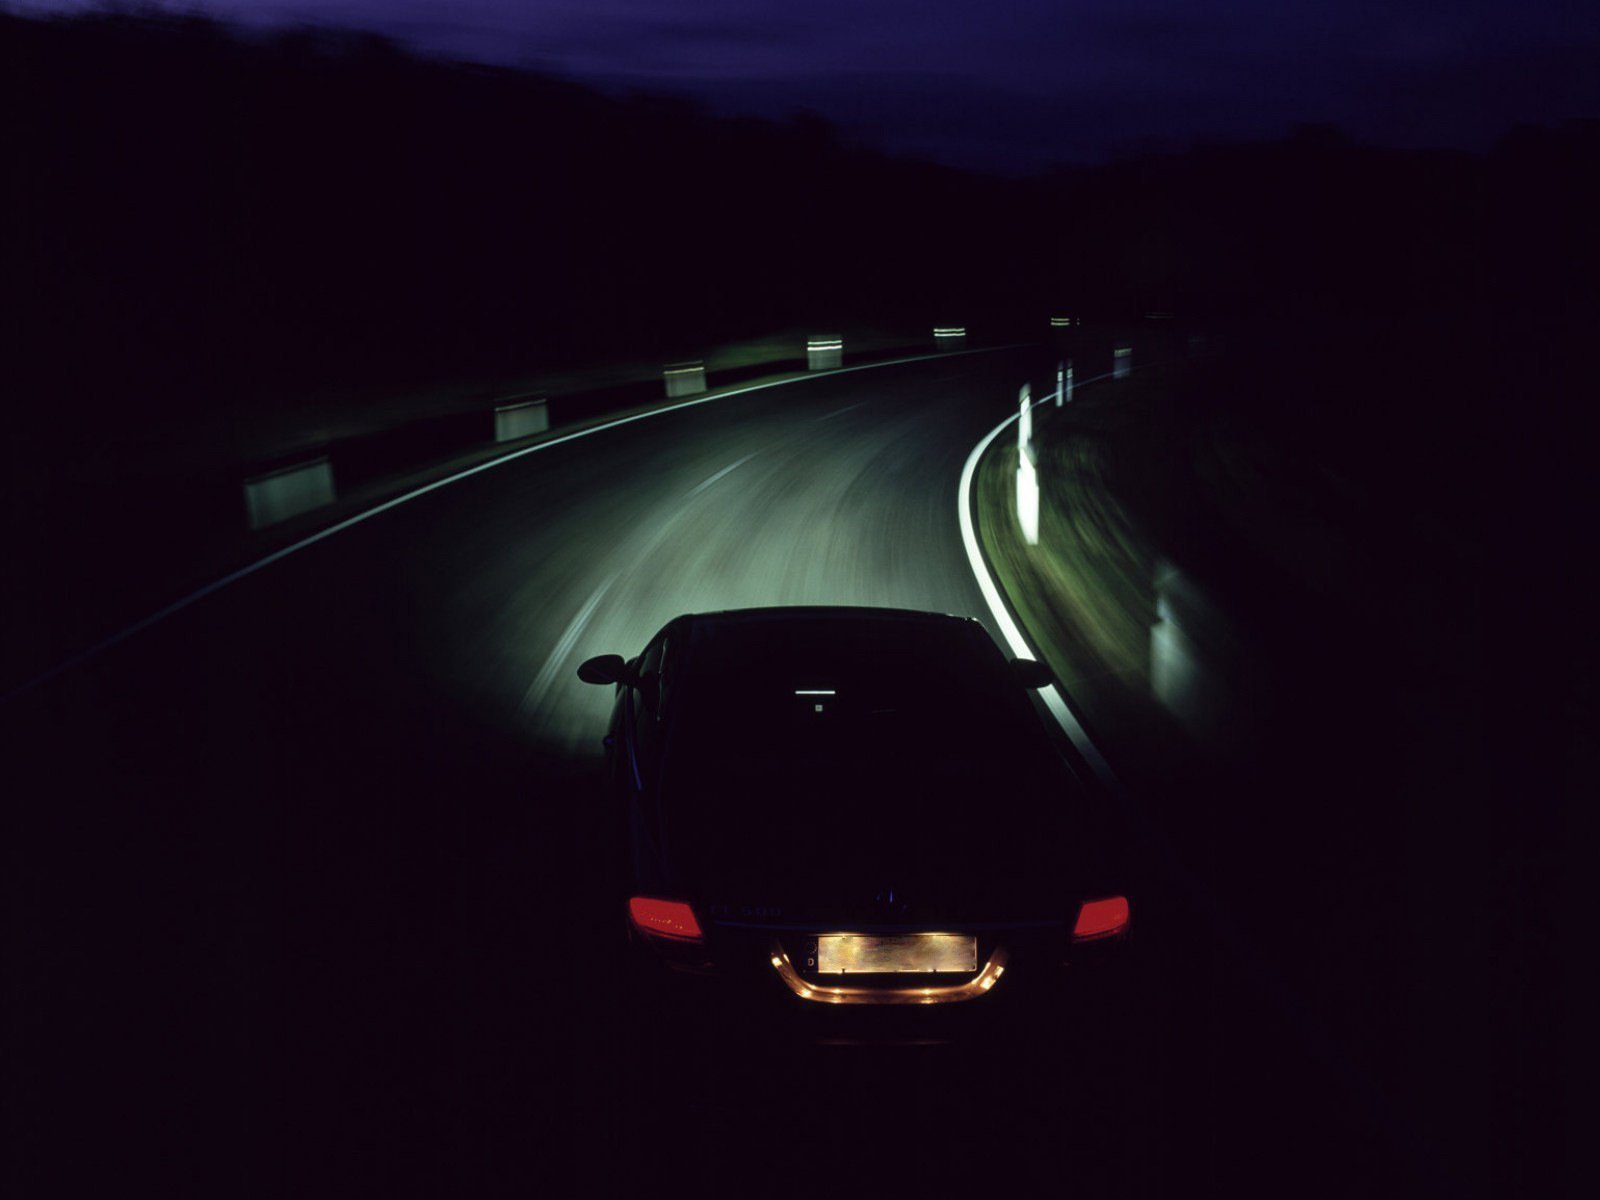 Автомобиль ночью на дороге. Машина ночью. Машина на дороге. Ночь дорога авто. Машина в темноте на дороге.